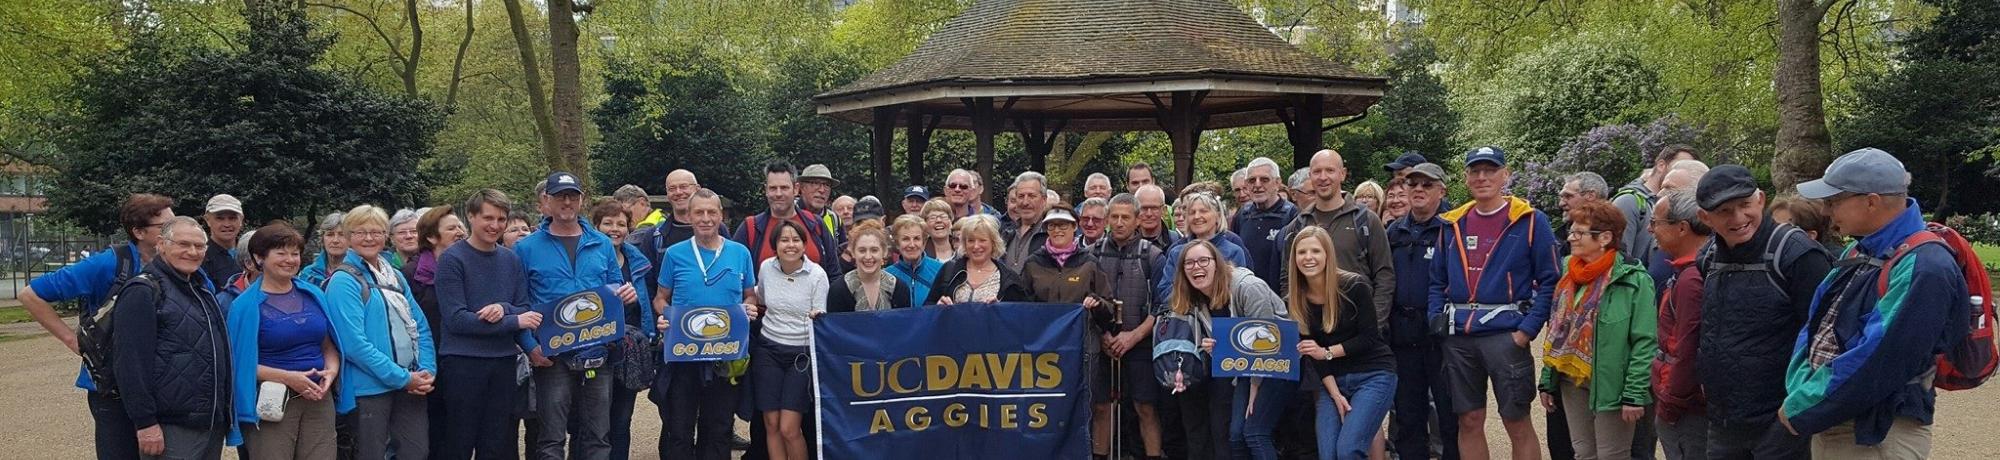 UC Davis Alumni in London at Picnic Day celebration